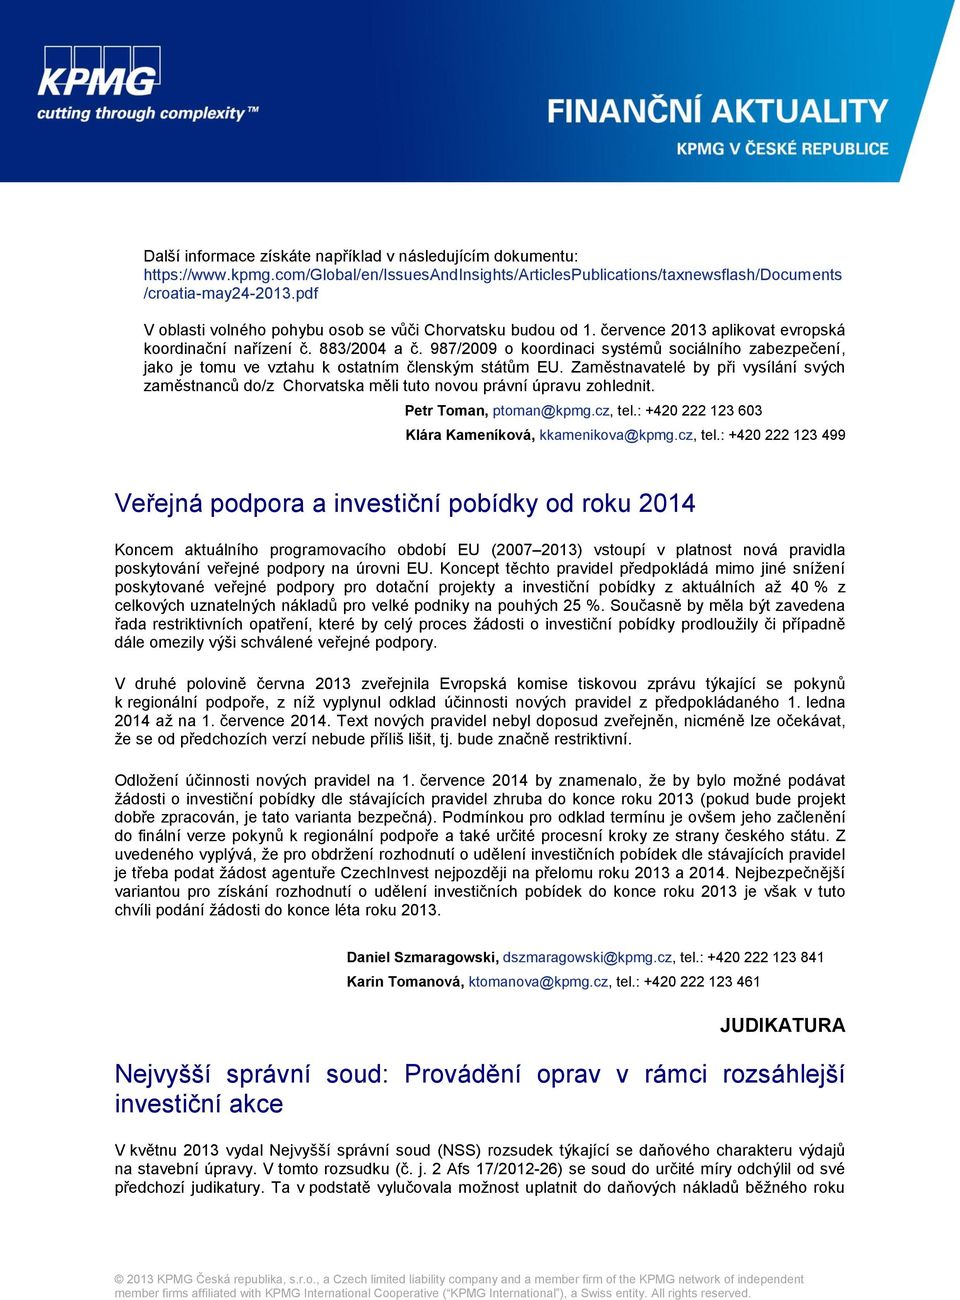 987/2009 o koordinaci systémů sociálního zabezpečení, jako je tomu ve vztahu k ostatním členským státům EU.